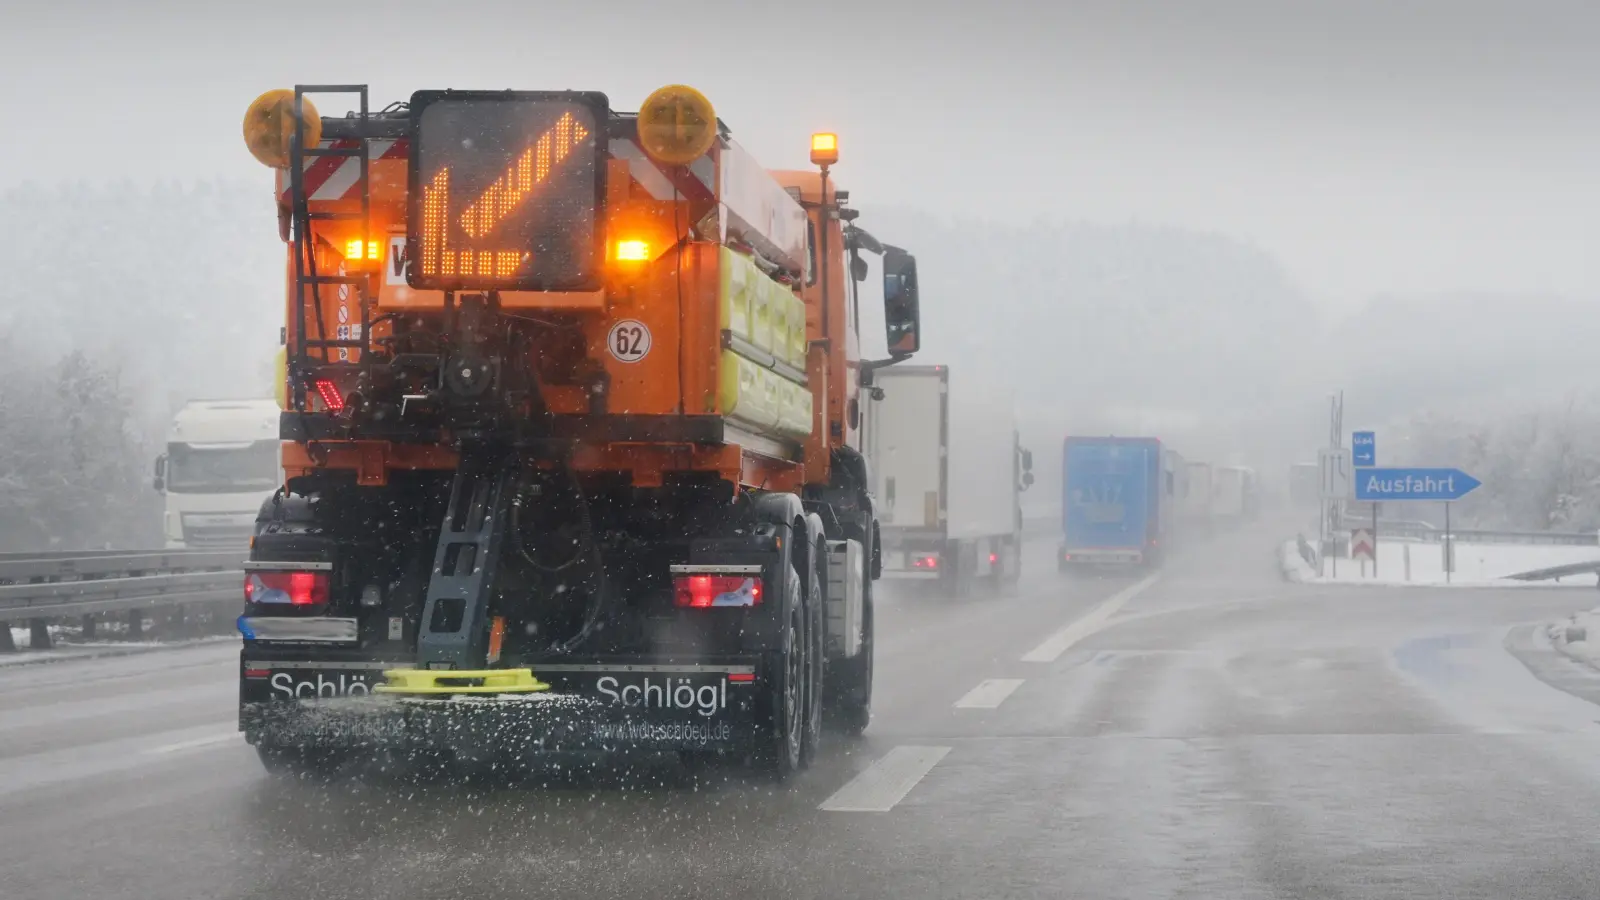 Winterliche Straßenverhältnisse sorgten in der Region für zahlreiche Unfälle. Verkehrsteilnehmer müssen weiter mit schwierigen Bedingungen rechnen. (Foto: Jim Albright)